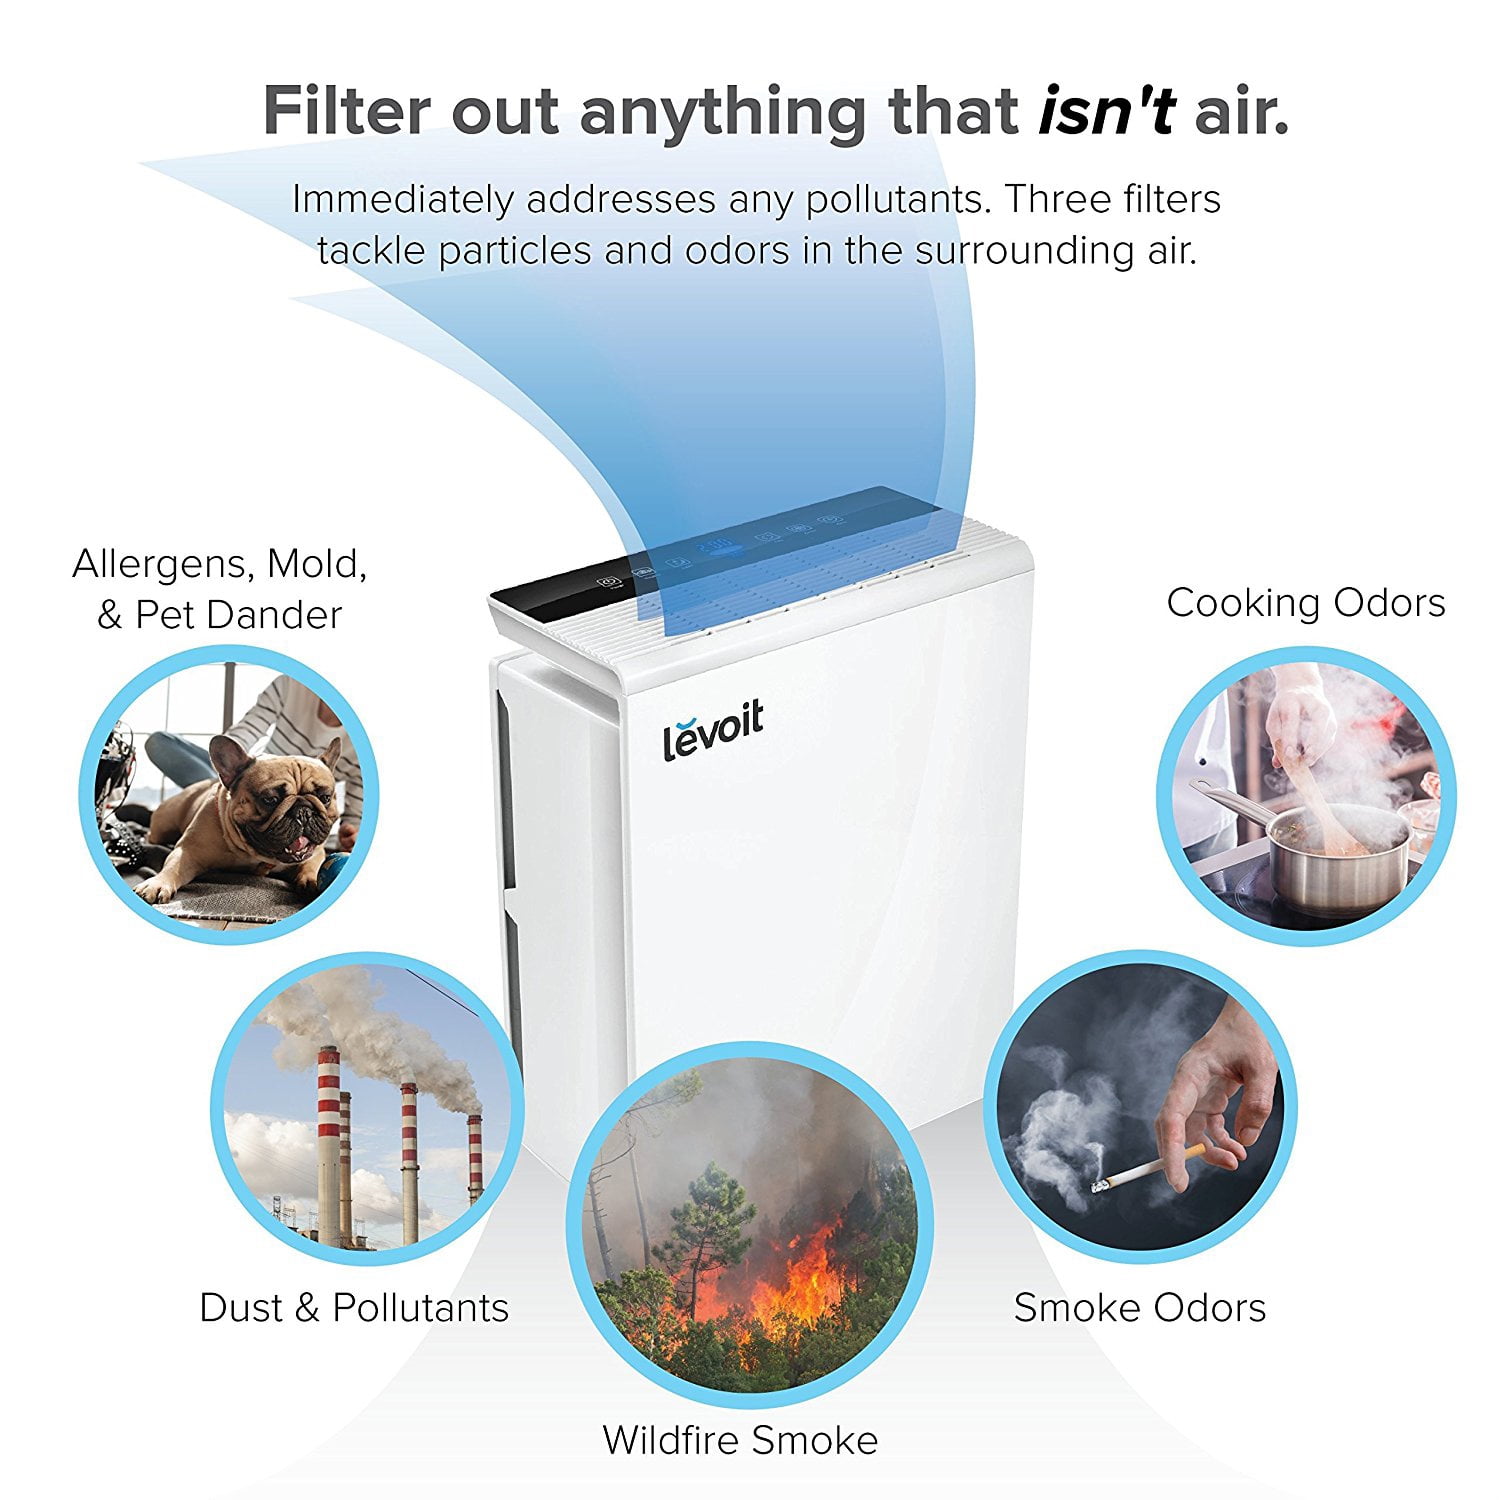 Levoit Smart Air Purifier Lv-rh131s-wm, HEPA for Smoke & Odors, Bonus Filter, Energy Star